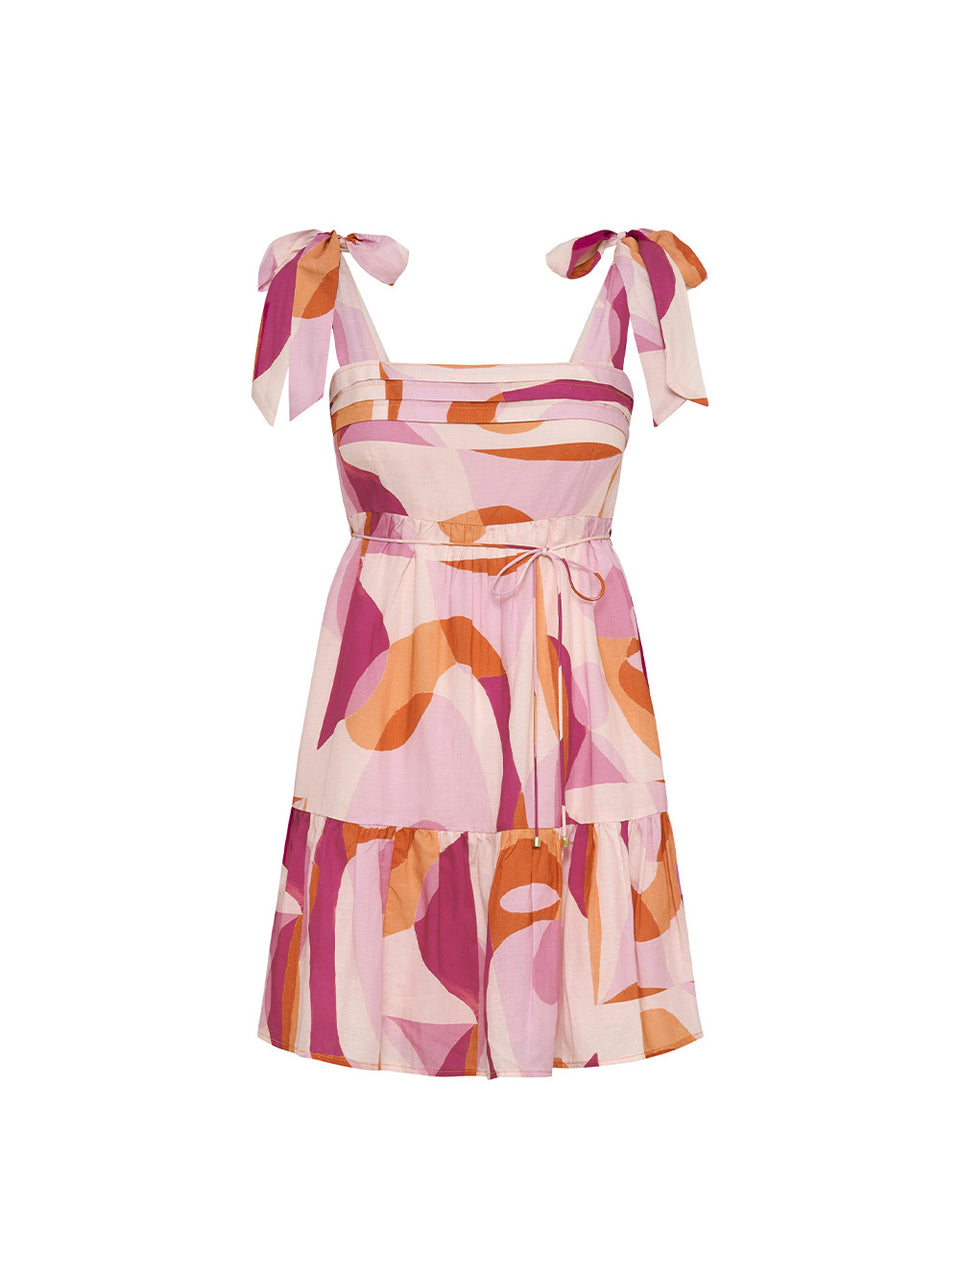 KIVARI Franz Mini Dress | Pink and Orange Mini Dress